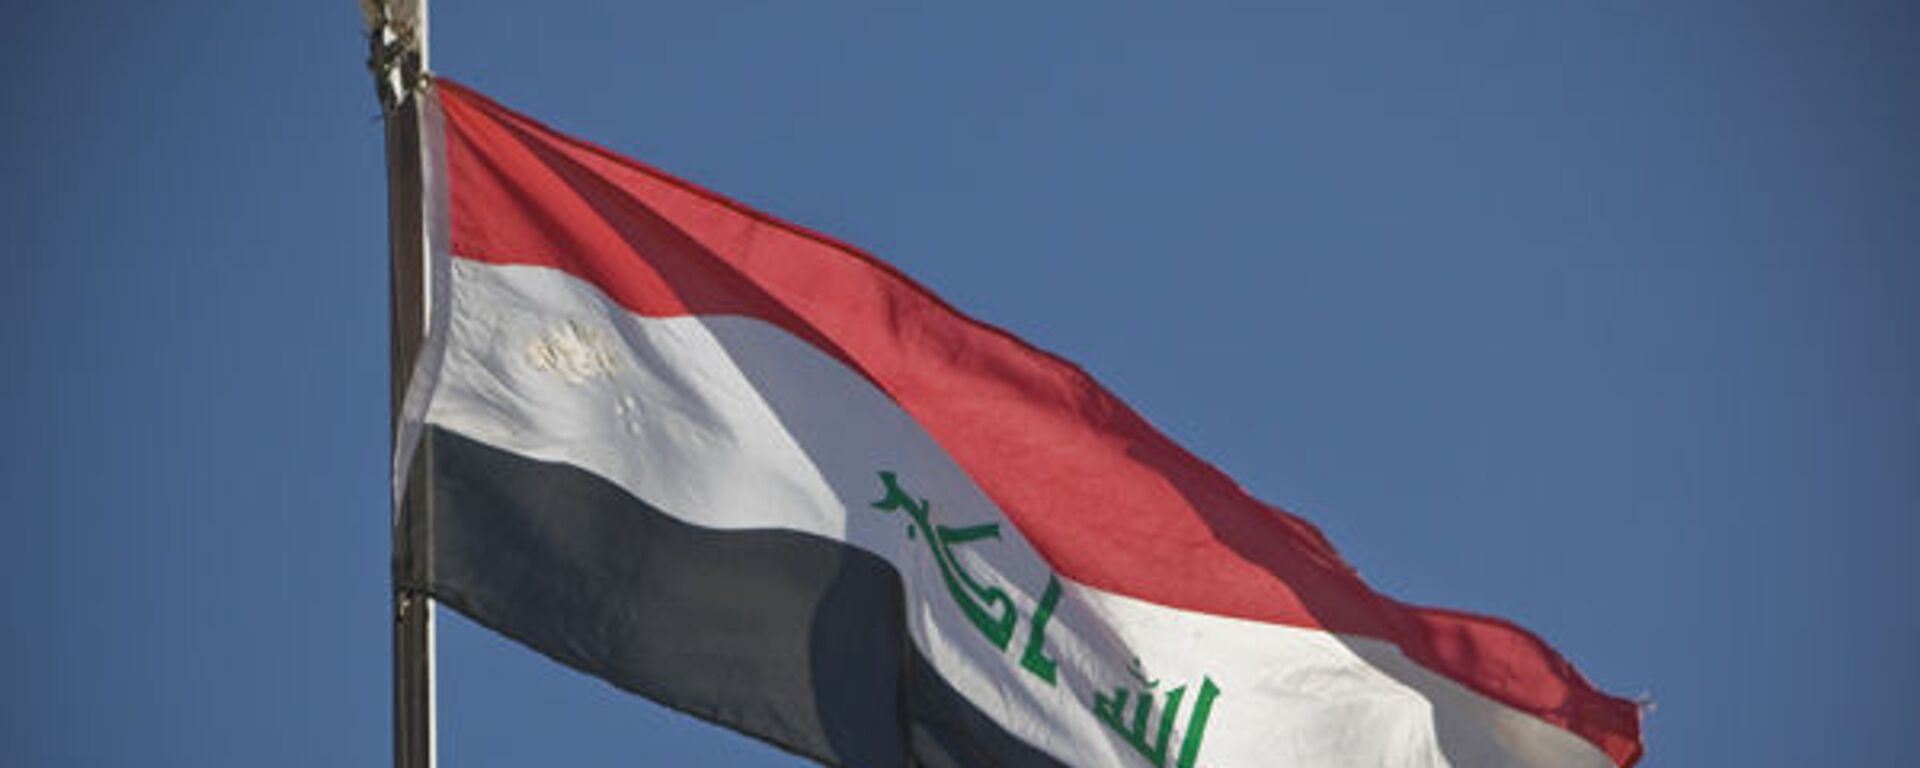 Iraqi flag - Sputnik International, 1920, 26.09.2021